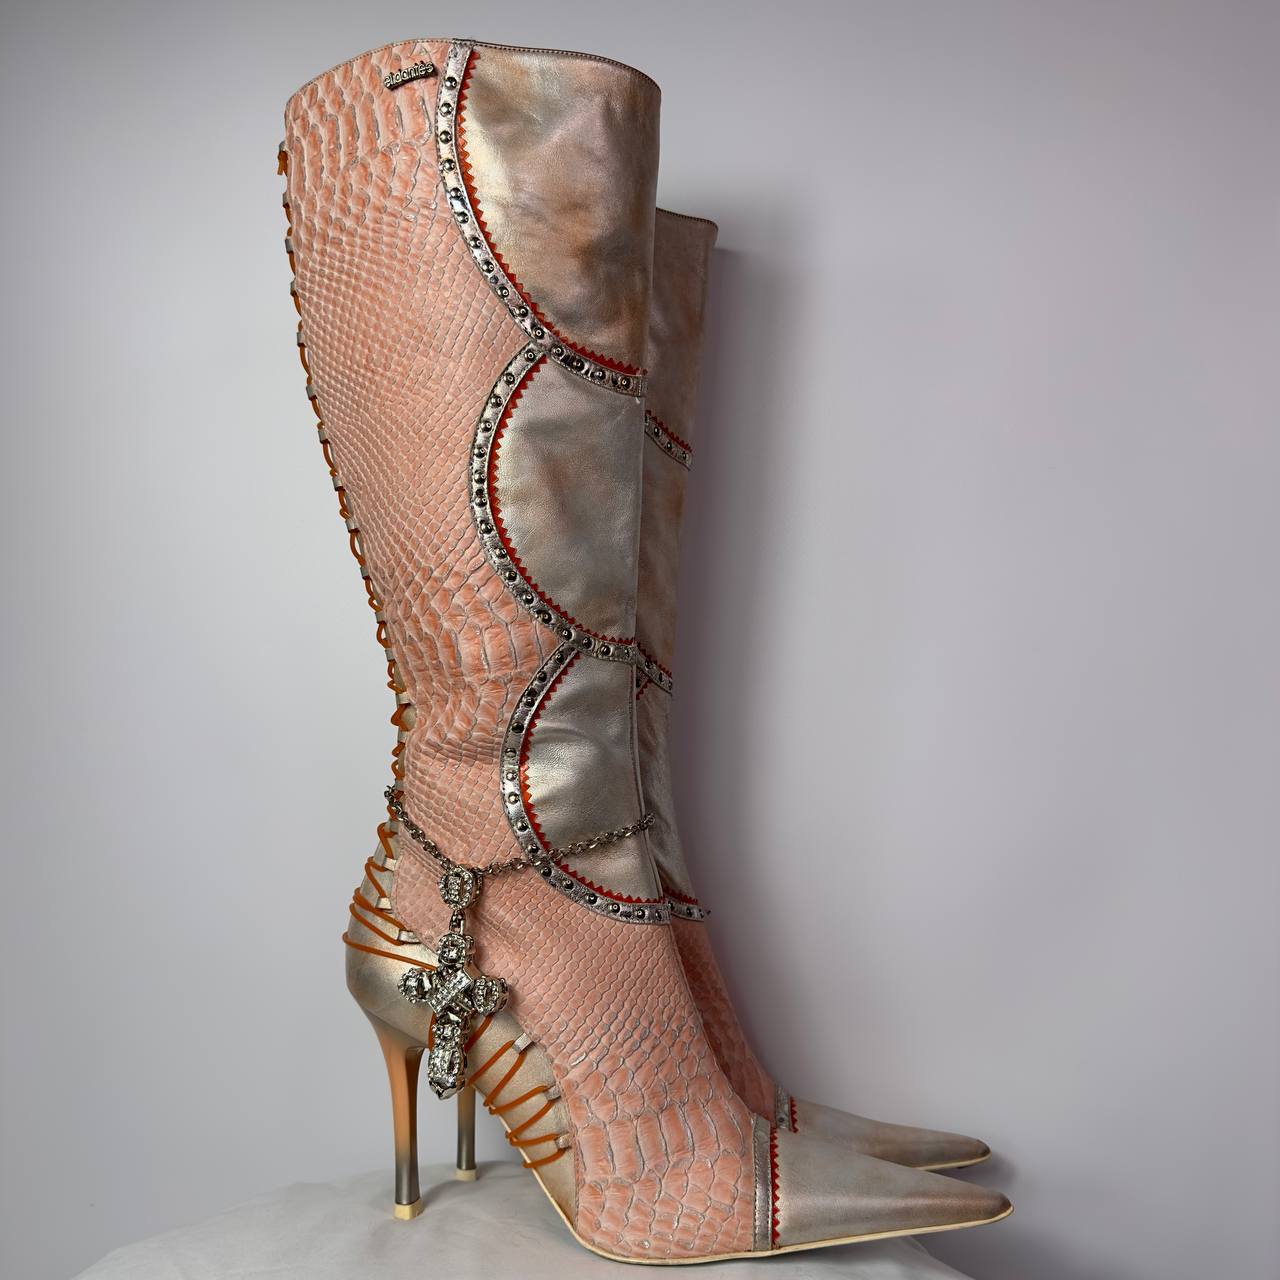 El Dante’s Vintage Knee High boots